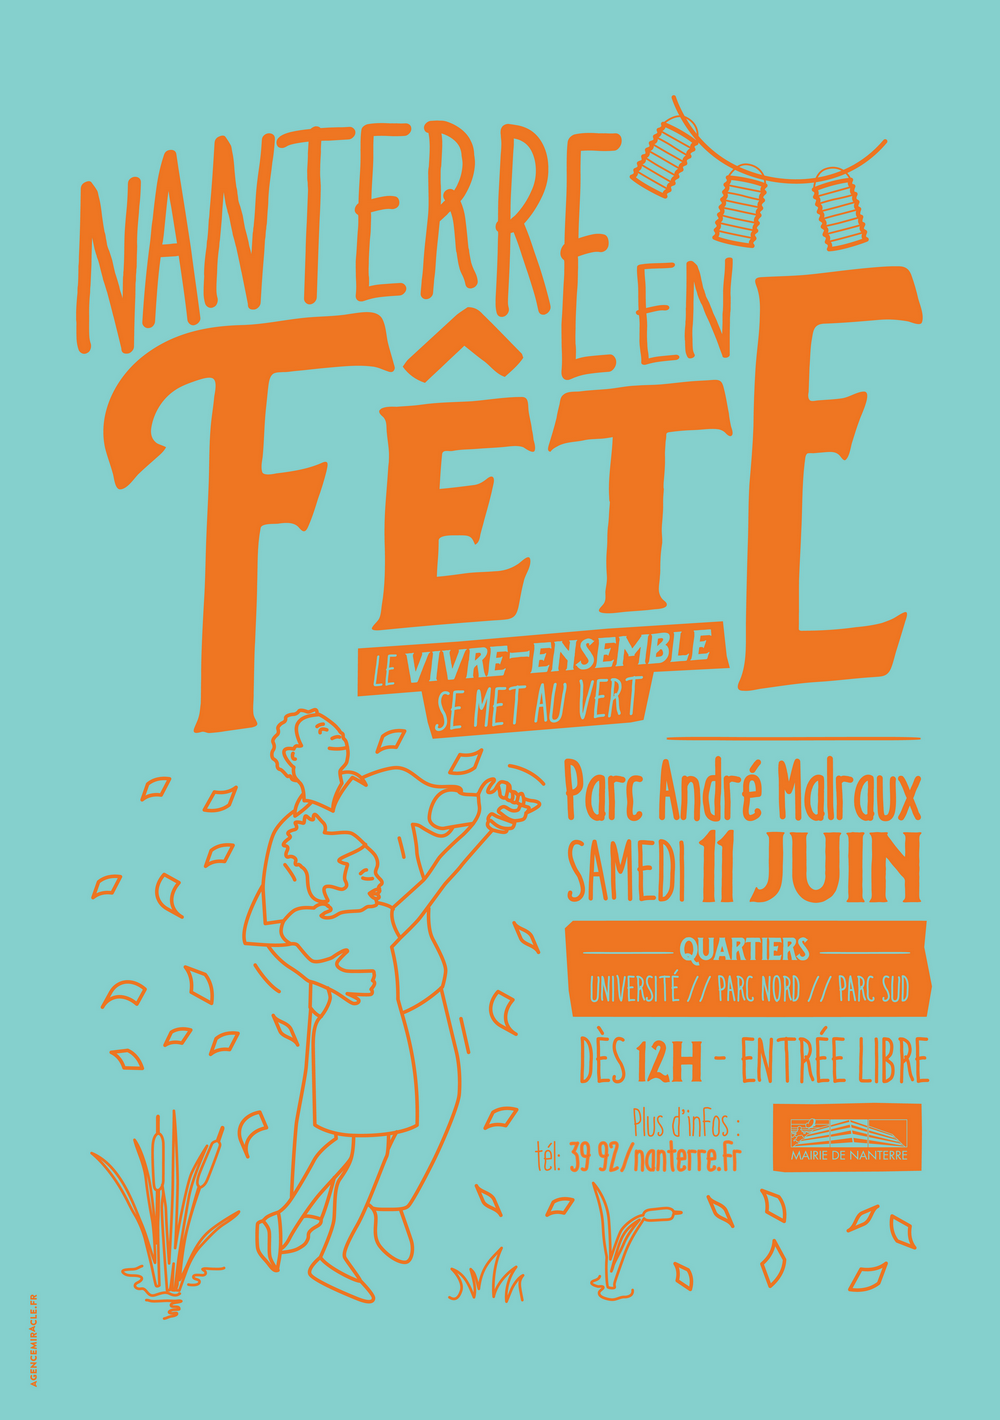 Programme 2016 fête André Malraux (1)